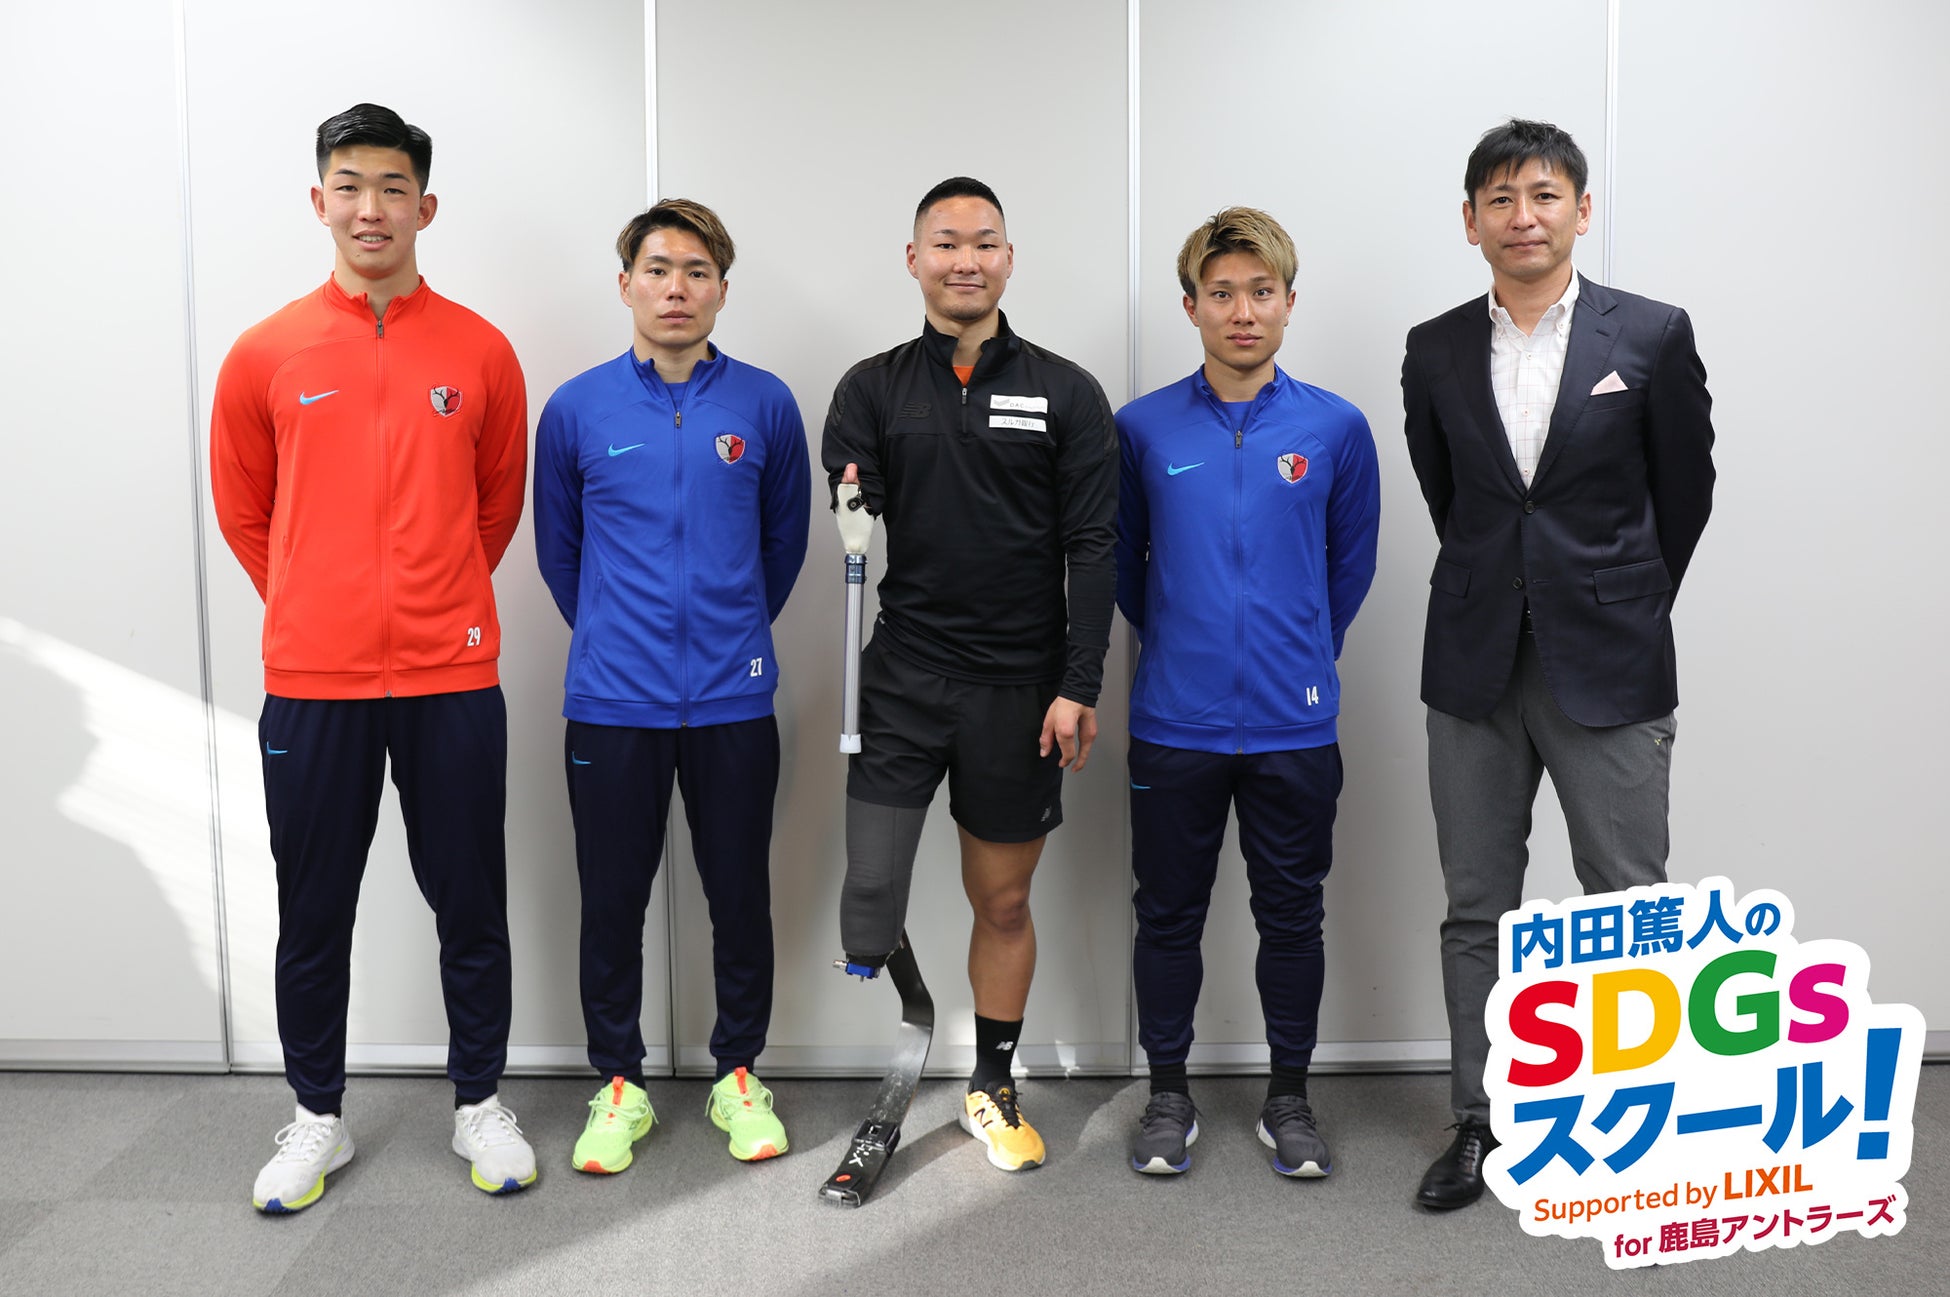 内田篤人さんからのミッションは“多様性への理解”　鹿島アントラーズの選手たちがスポーツ義足体験でSDGsを学ぶ